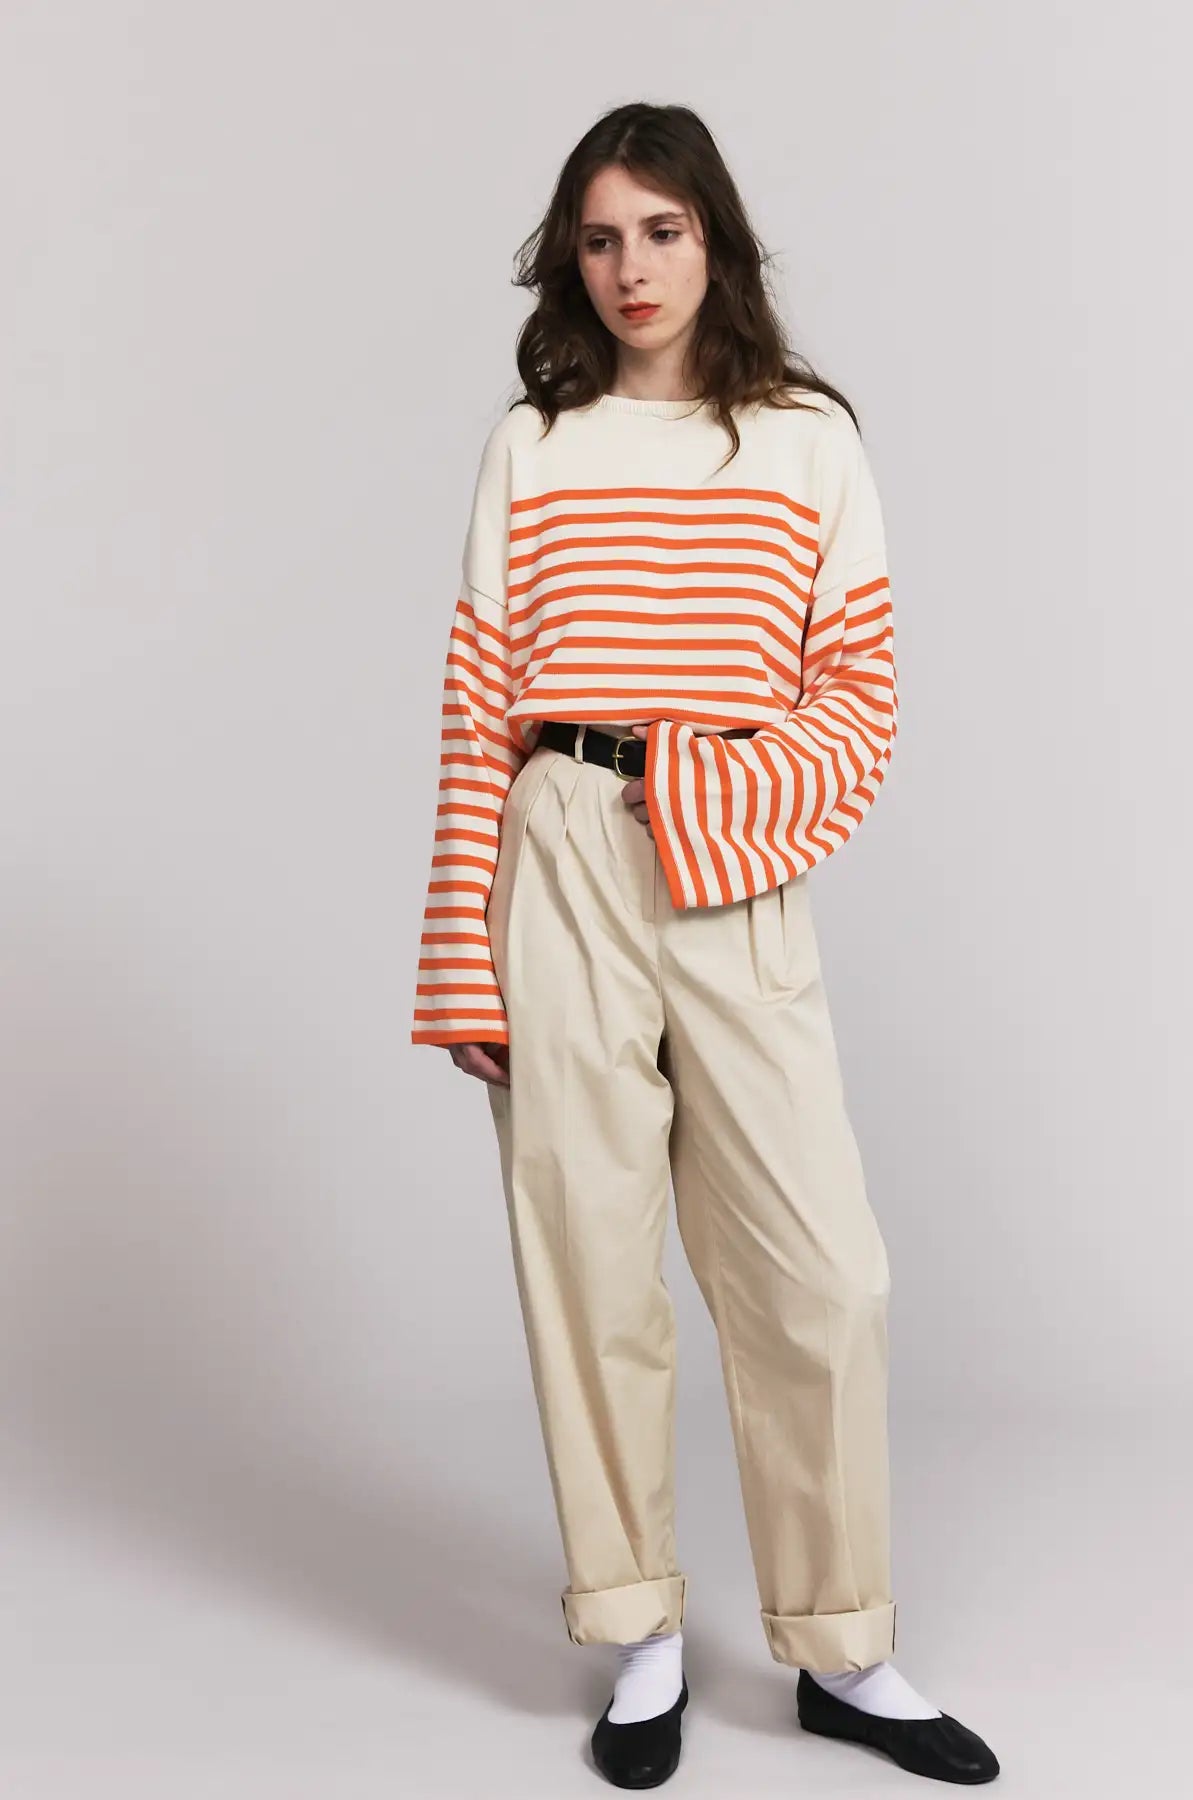 Produit maille Lori couleur Écru/Orange tricoté par la marque Parisienne Tricots Jean Marc 1972.